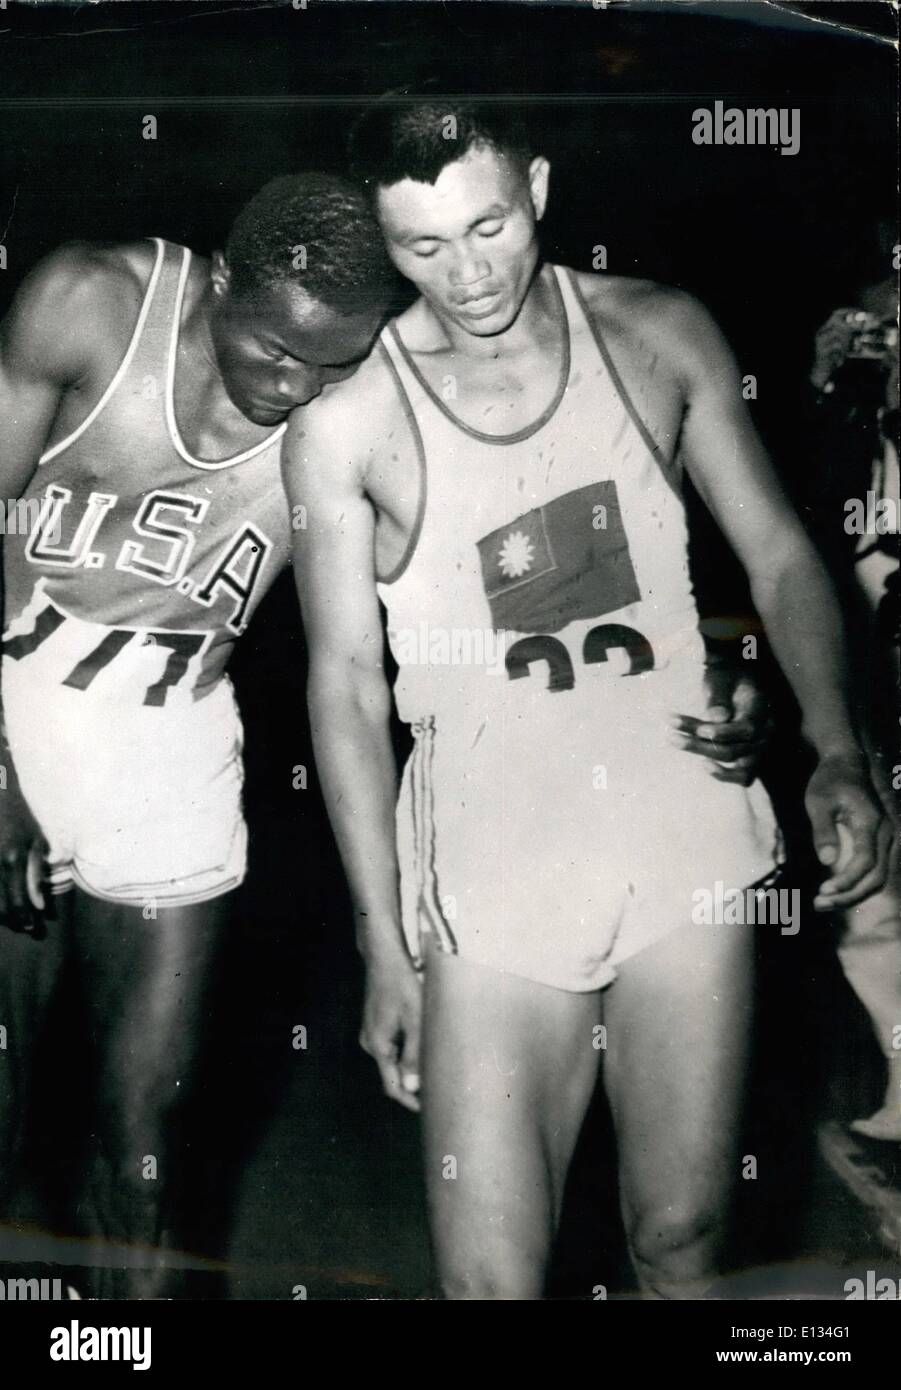 28 févr. 2012 - Jeux Olympiques de Rome 1960 decathlon. Johnson Yang Banque D'Images